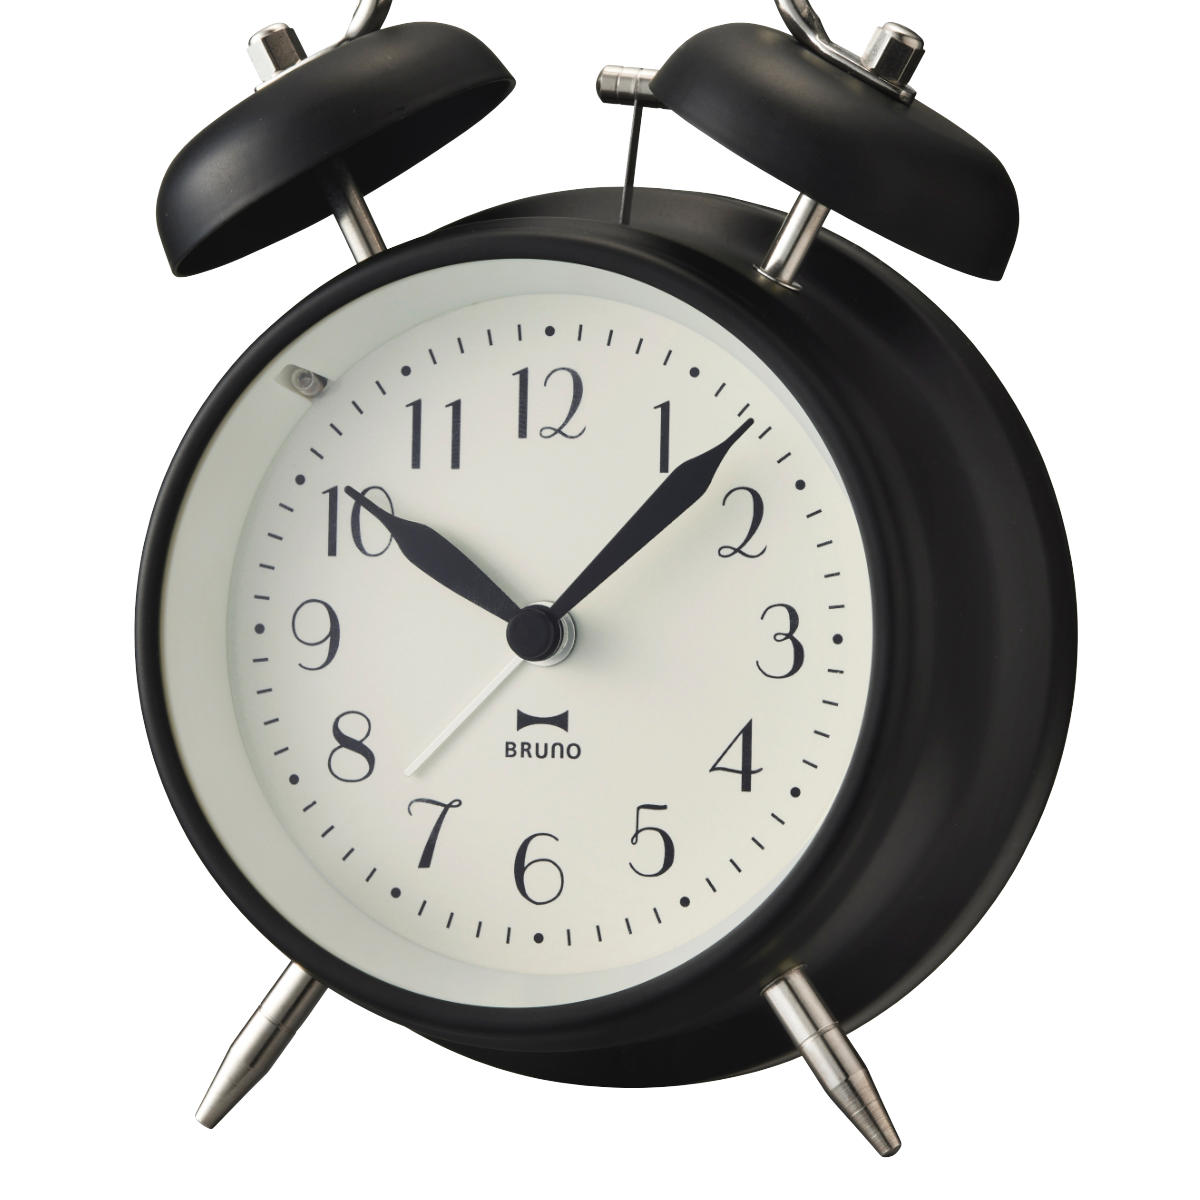 BRUNO 置き時計 モノクロツインベルクロック アラーム ベル （ ブルーノ 時計 目覚まし時計 置時計 とけい クロック アナログ めざまし時計  アラームクロック 二針式 ライト機能 寝室 卓上 ） 【ブラック】